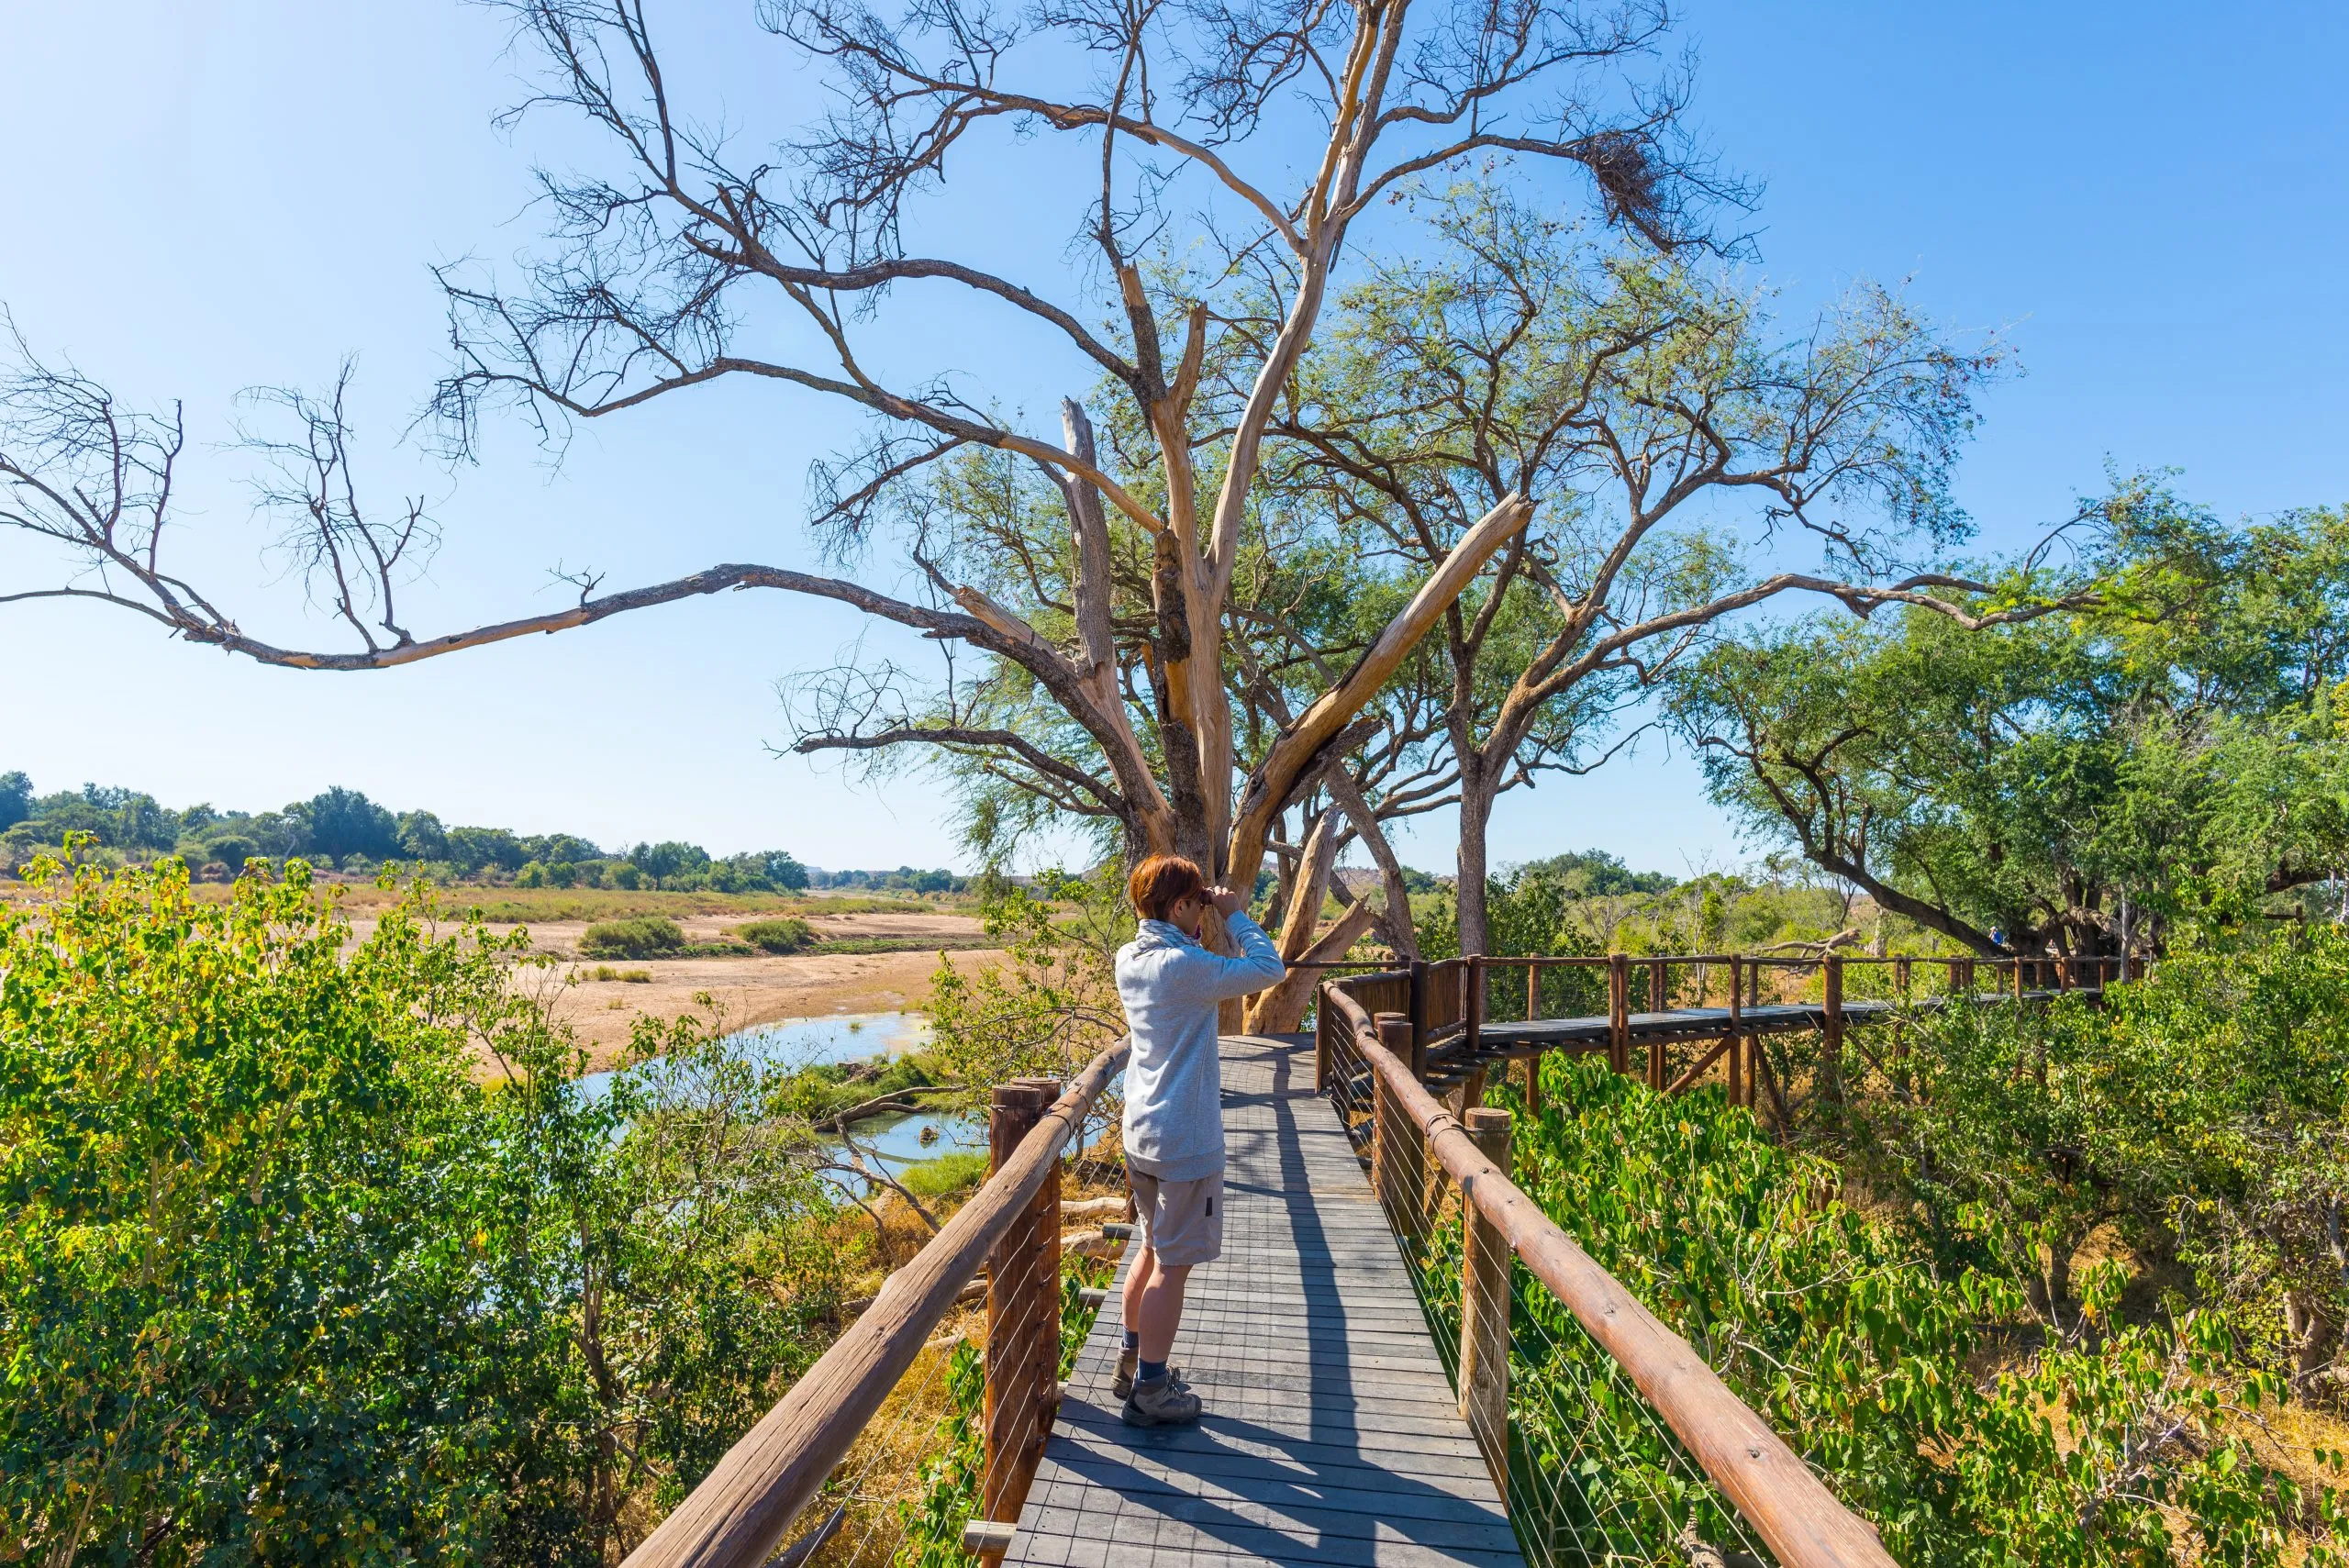 Matkailija katselee panoraamaa kiikarilla Olifants-joen yli avautuvalta näköalapaikalta, luonnonkaunis ja värikäs maisema, jossa on villieläimiä Krugerin kansallispuistossa, joka on kuuluisa matkakohde Etelä-Afrikassa.